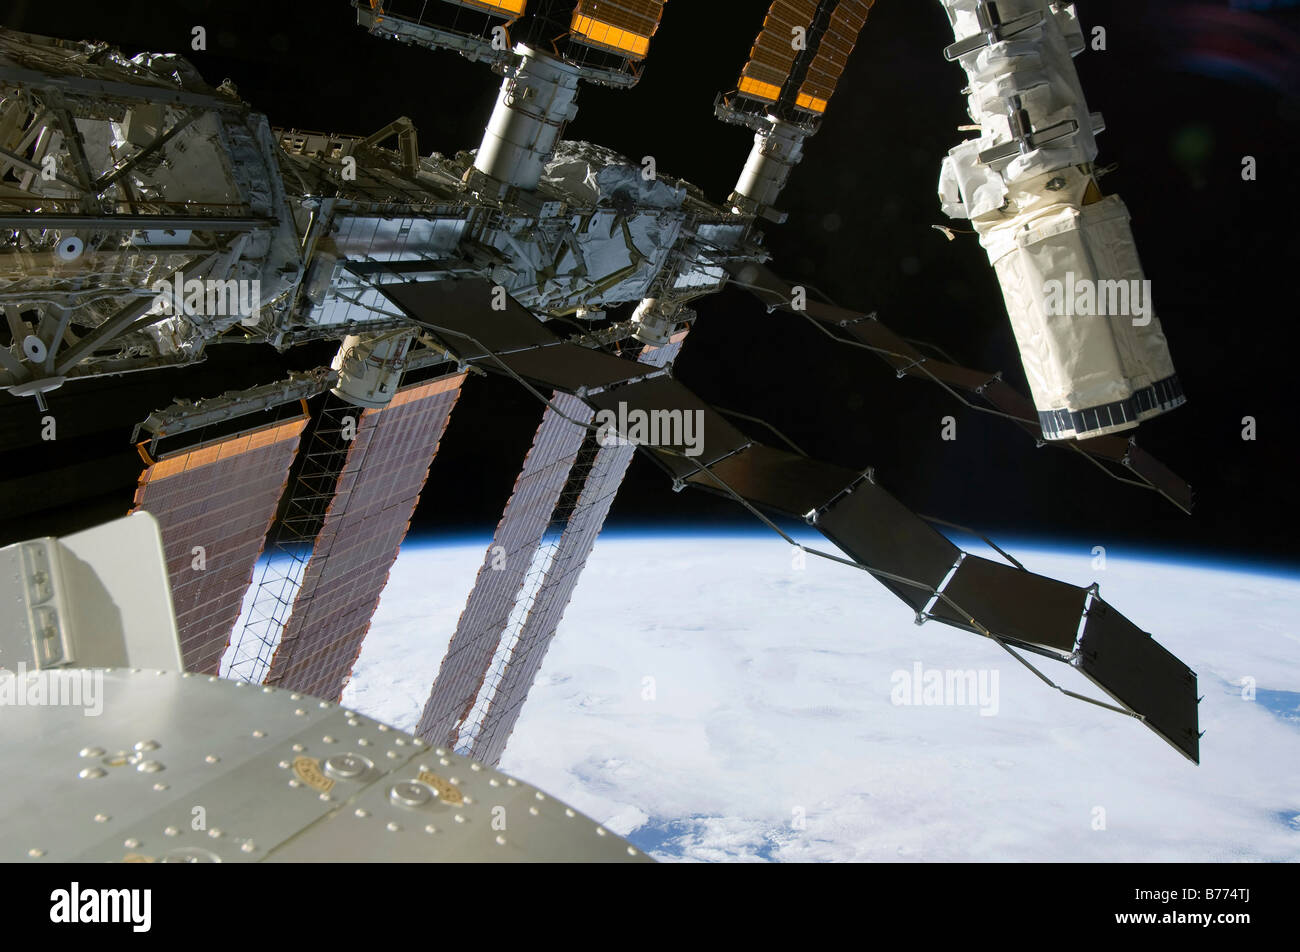 El efector final del brazo robot del emprendimiento aparece entre elementos de la Estación Espacial Internacional. Foto de stock